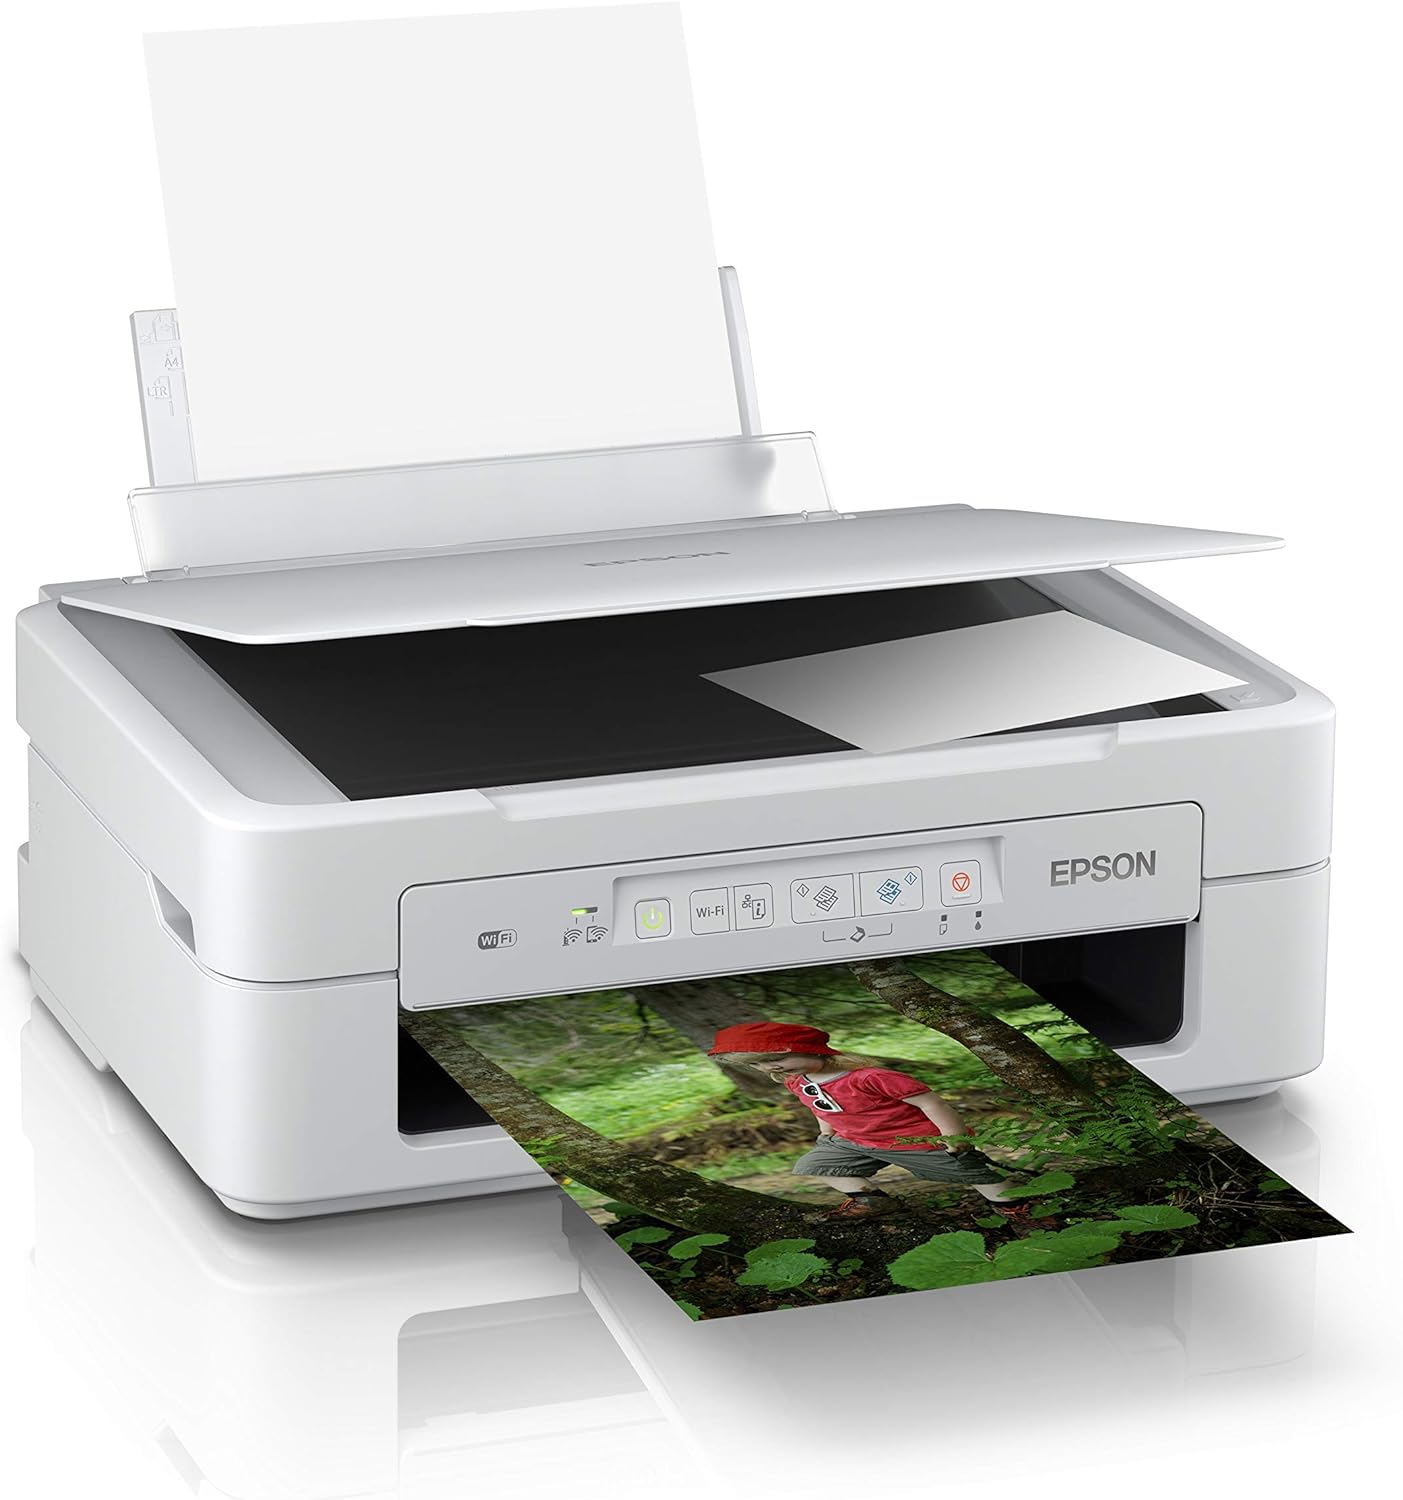 Epson printer with blurry printout